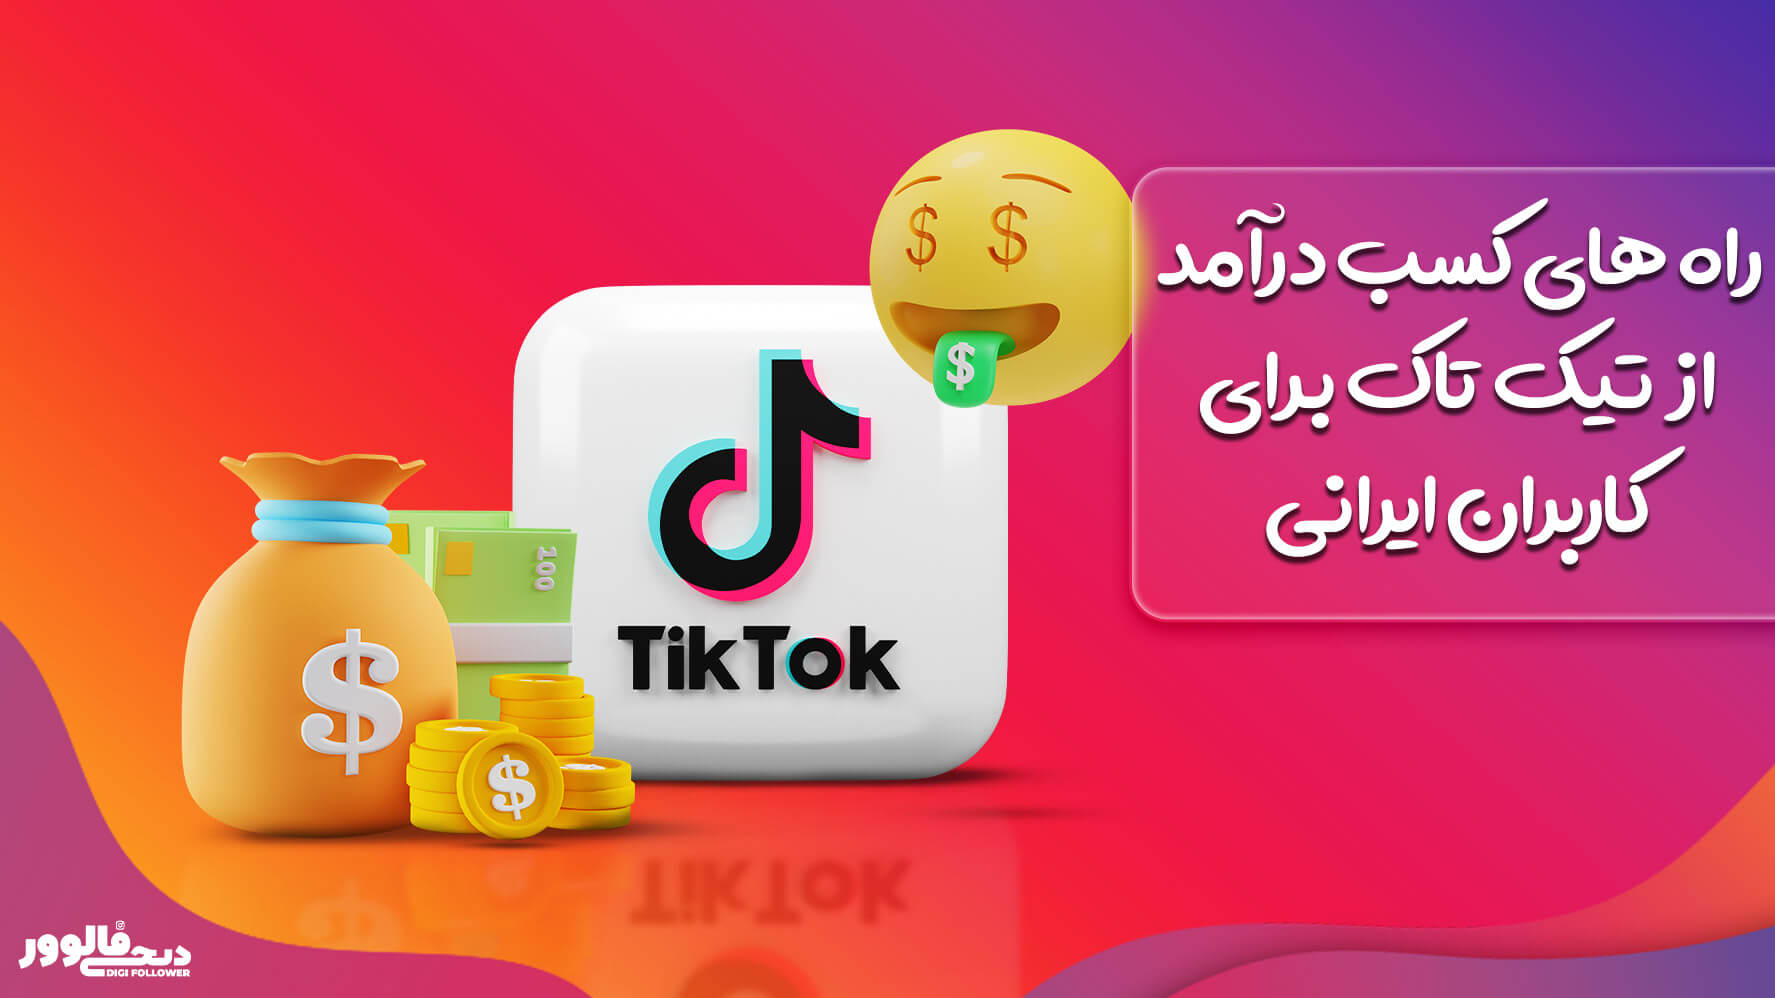 راه های کسب درآمد از تیک تاک برای کاربران ایرانی